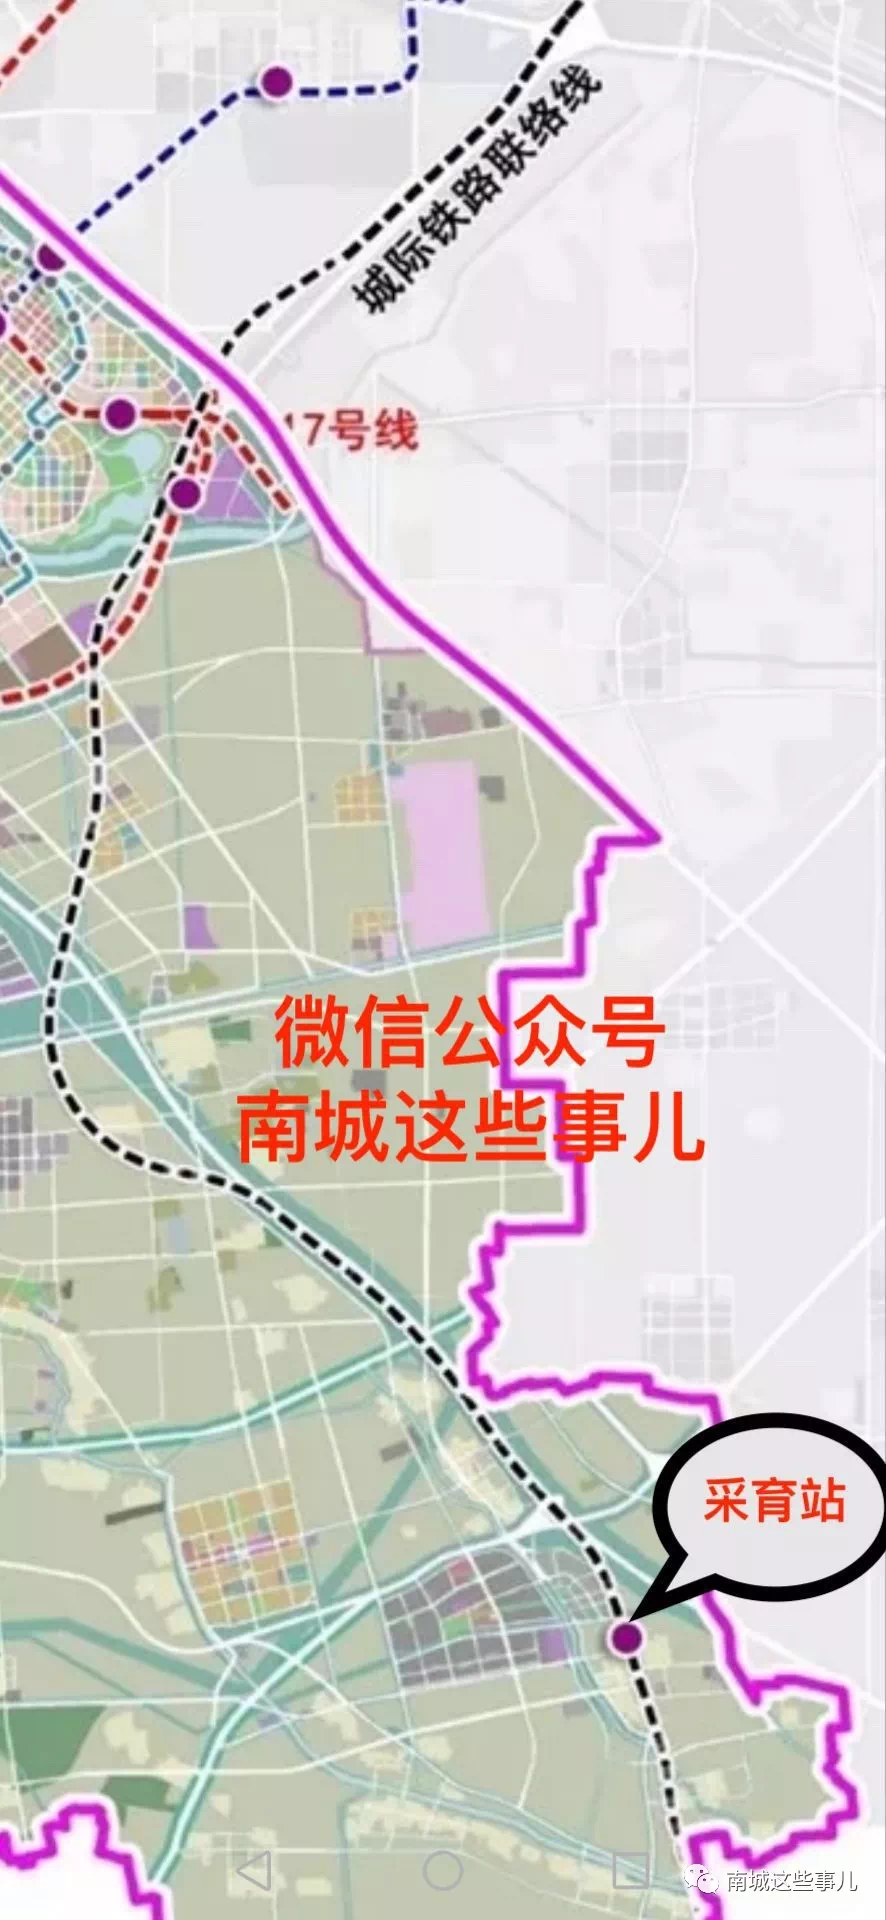 下图为亦庄新城轨道交通规划图的部分截图,联通副中心与大兴国际机场